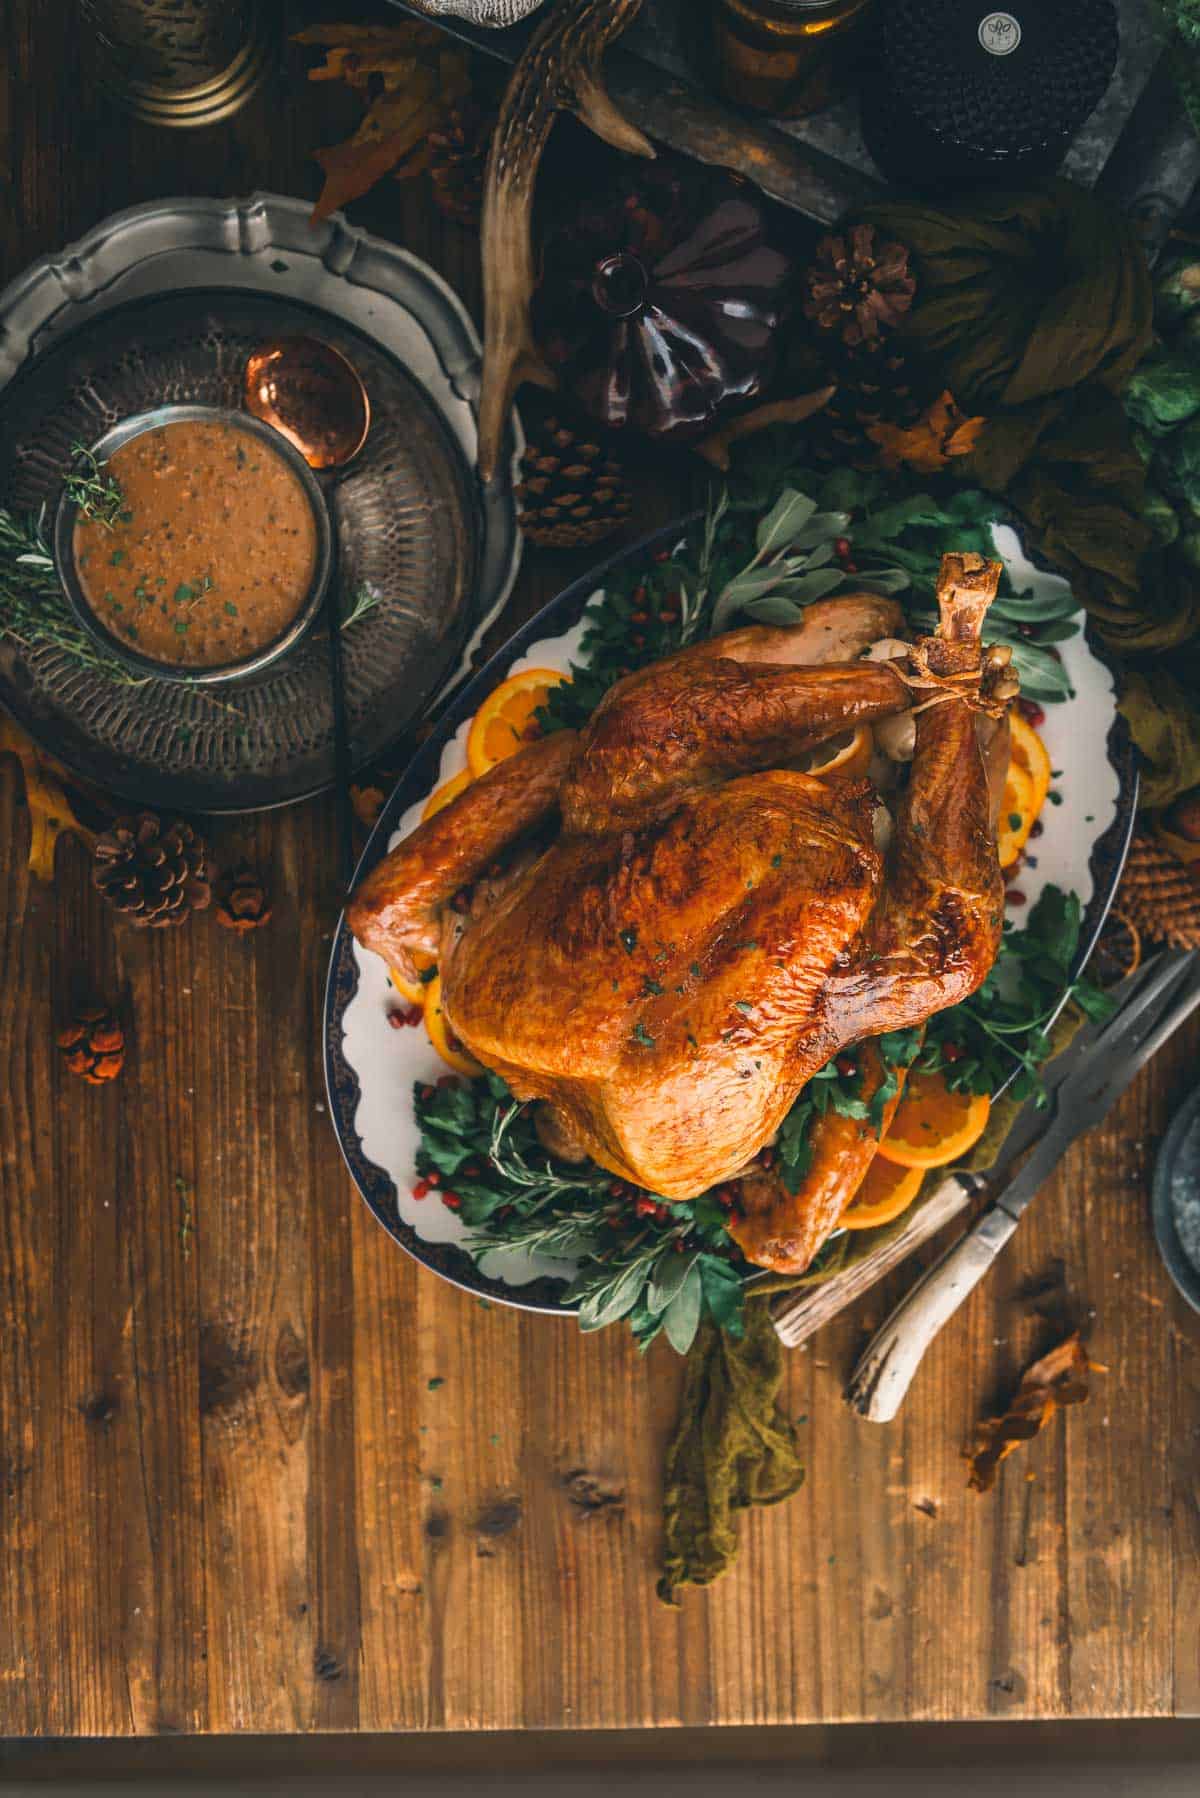 Oven roasted turkey on wood table.